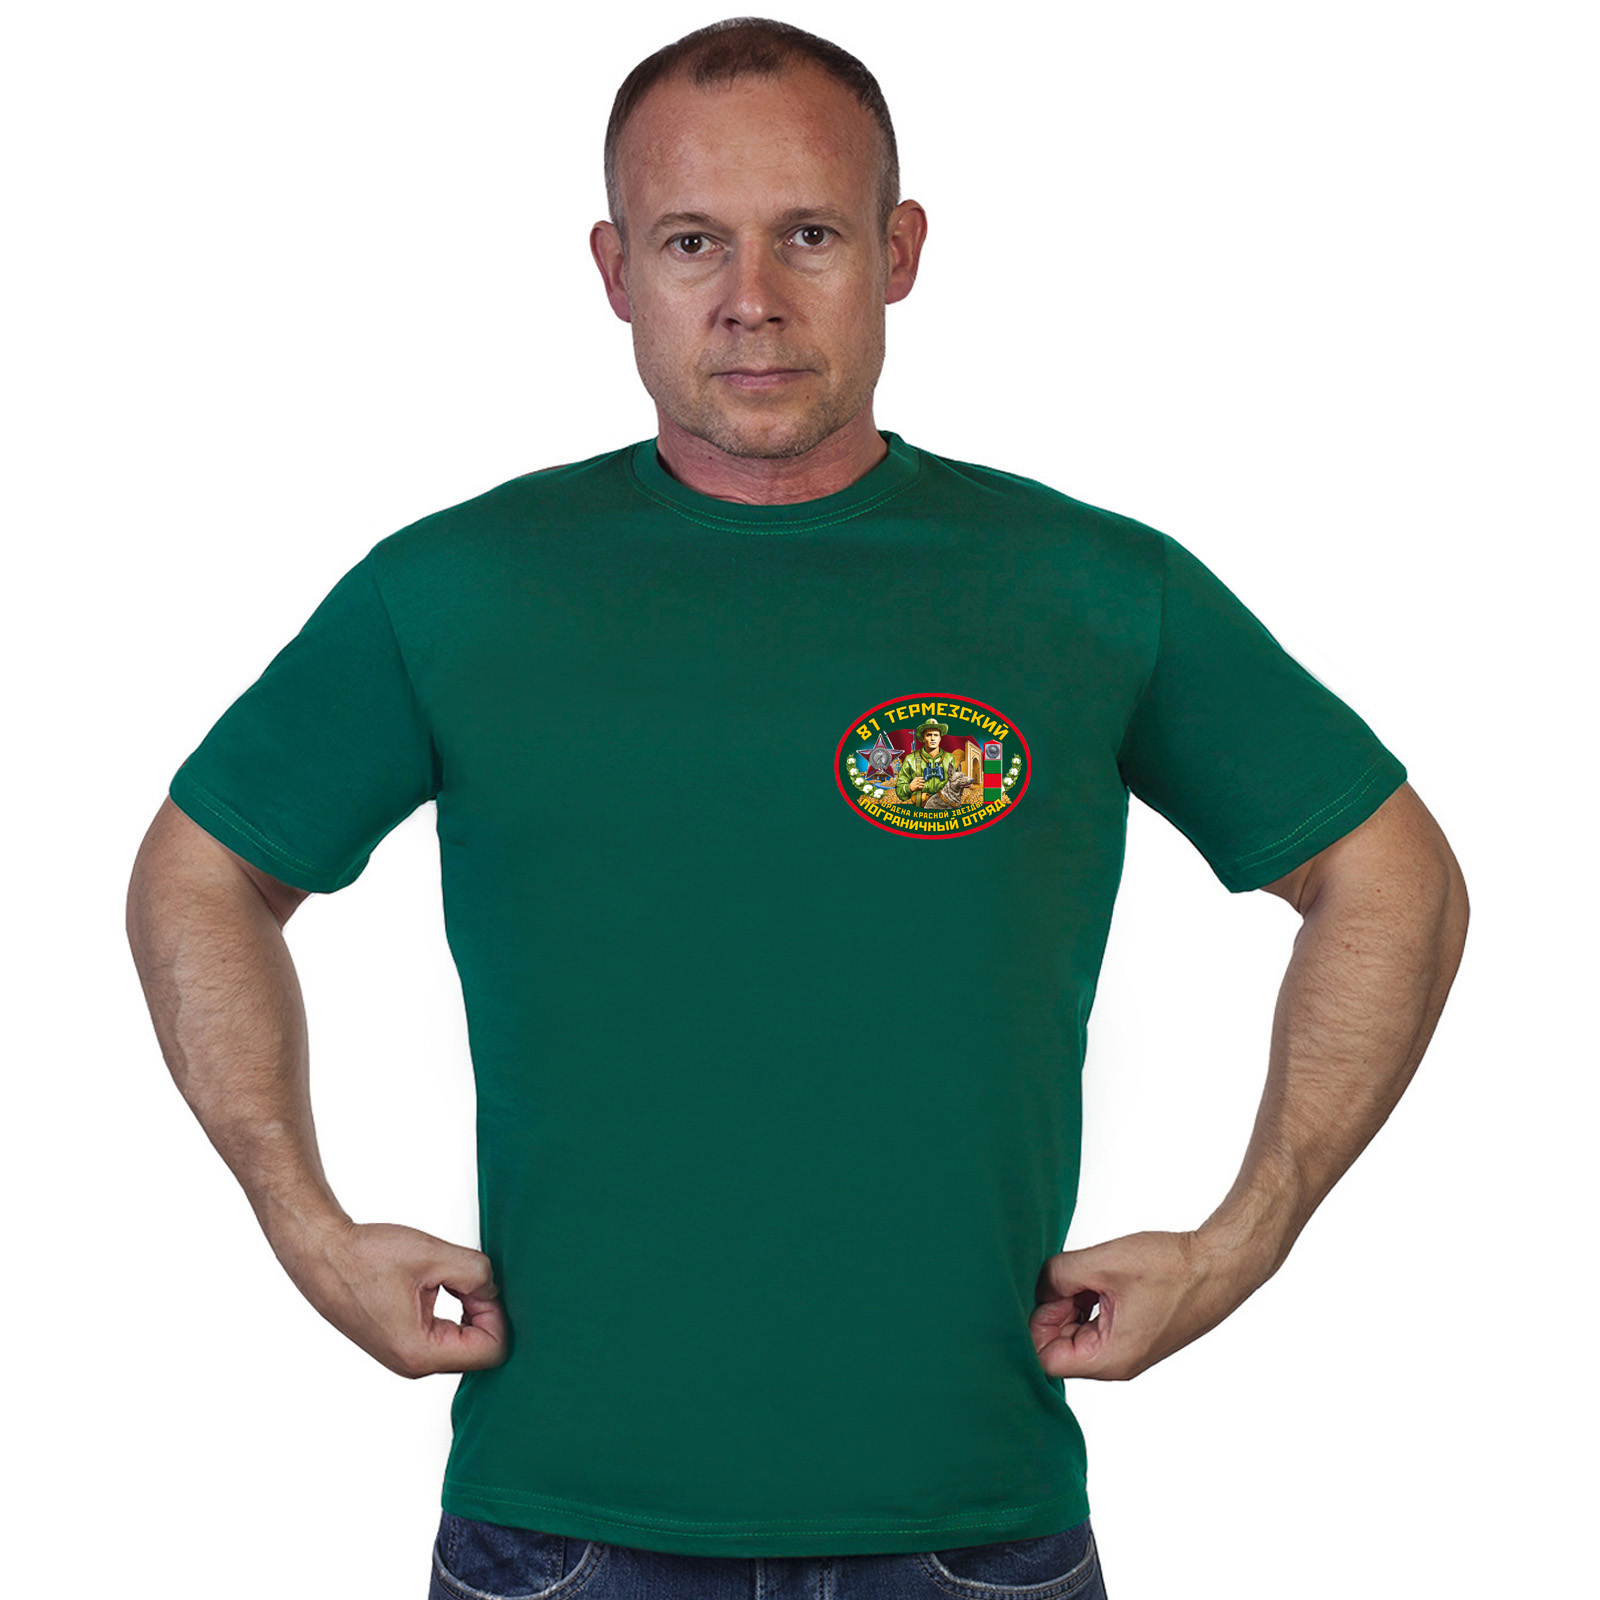 Зелёная футболка "81 Термезский пограничный отряд" 